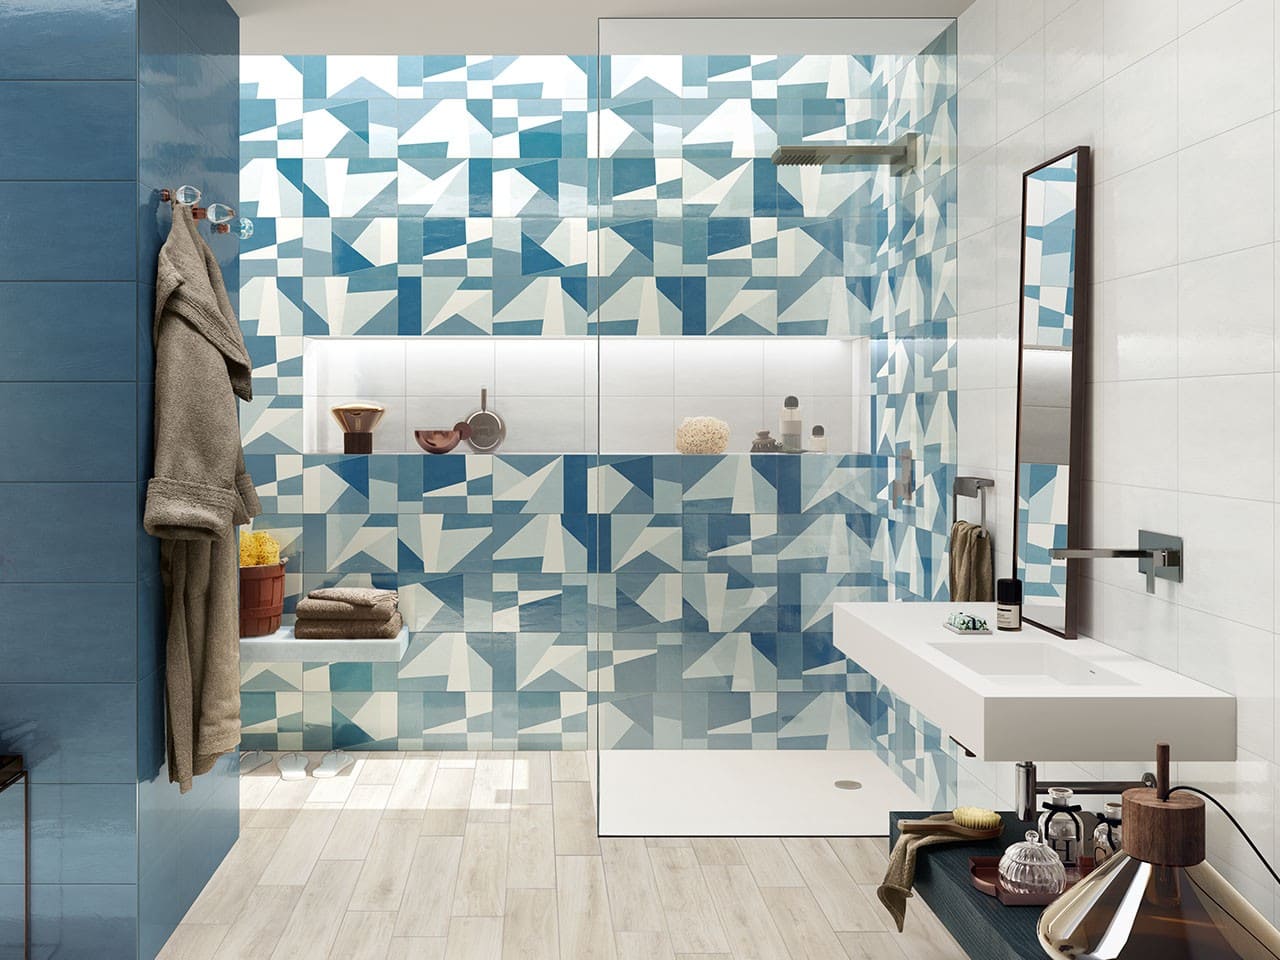 Motivo geometrico di ispirazione anni ’60 per il rivestimento della parete doccia